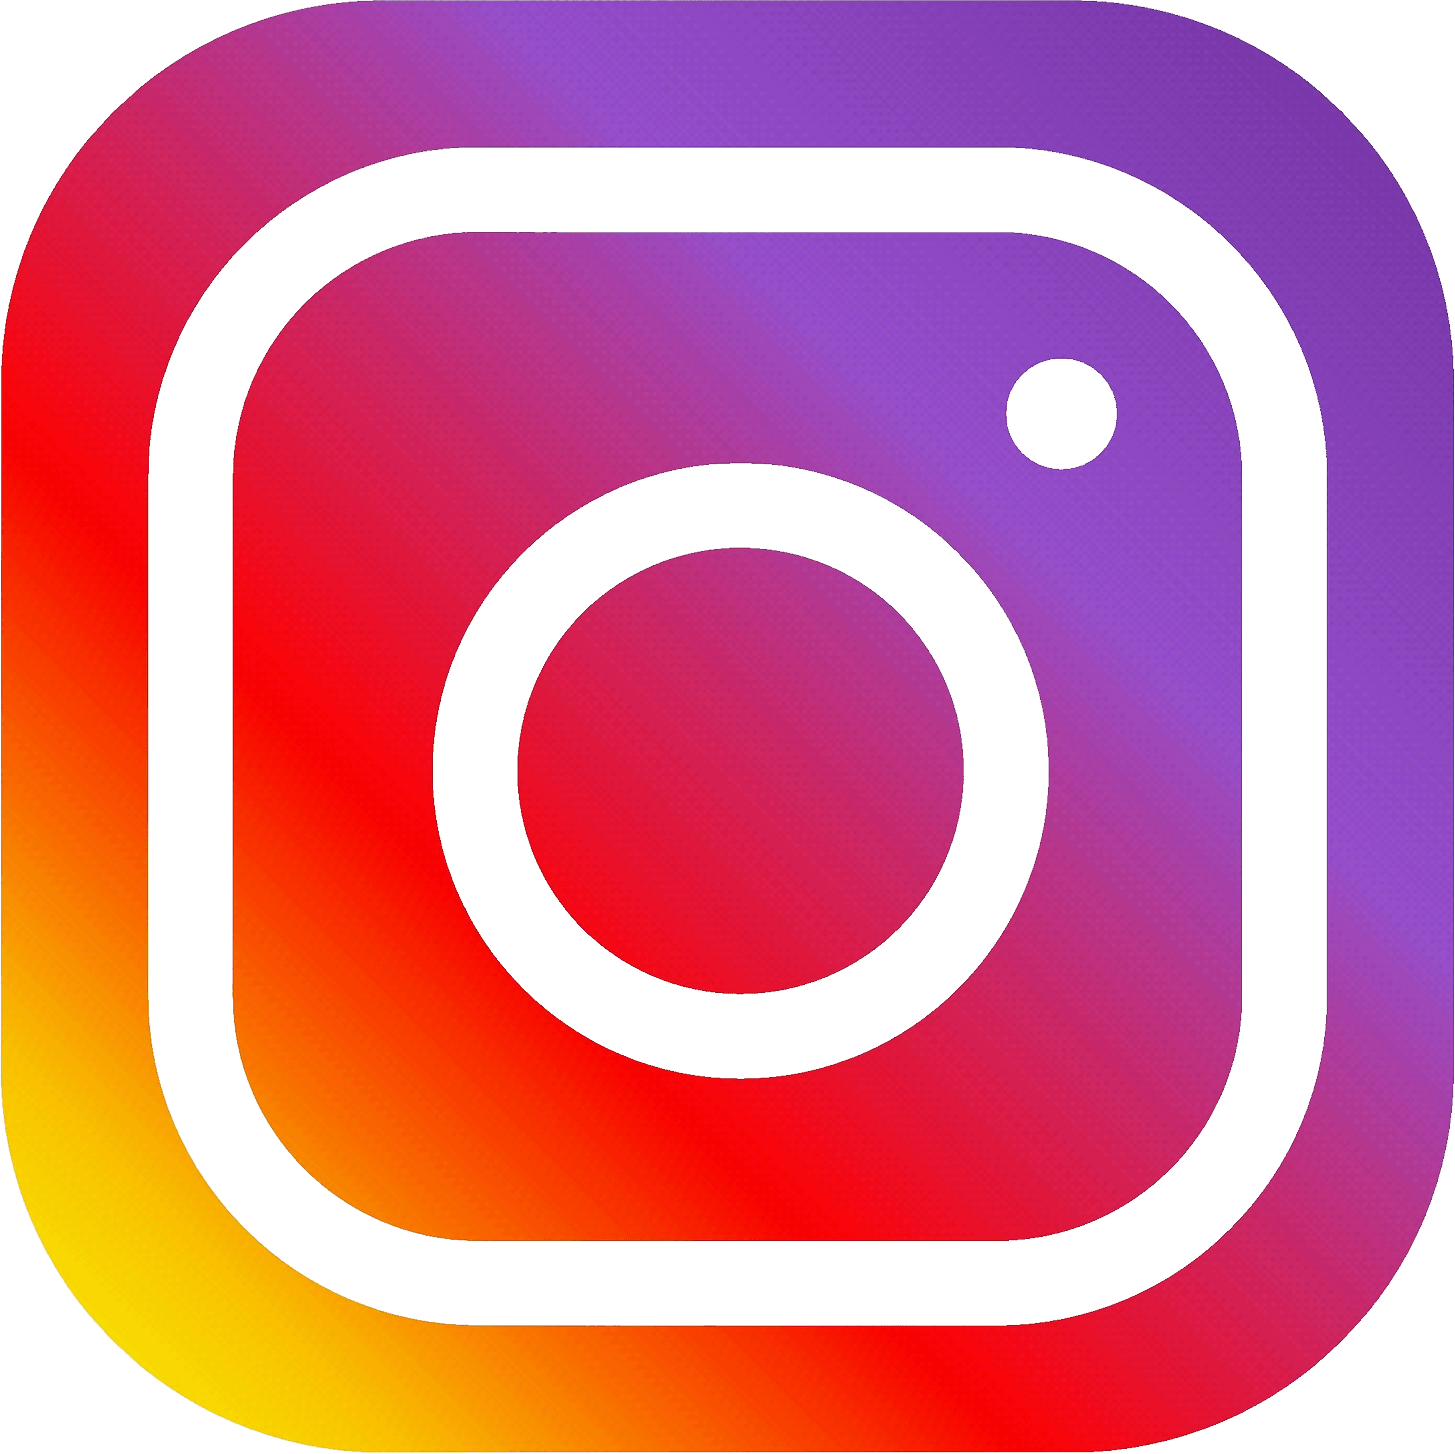 instagram logo png transparent background